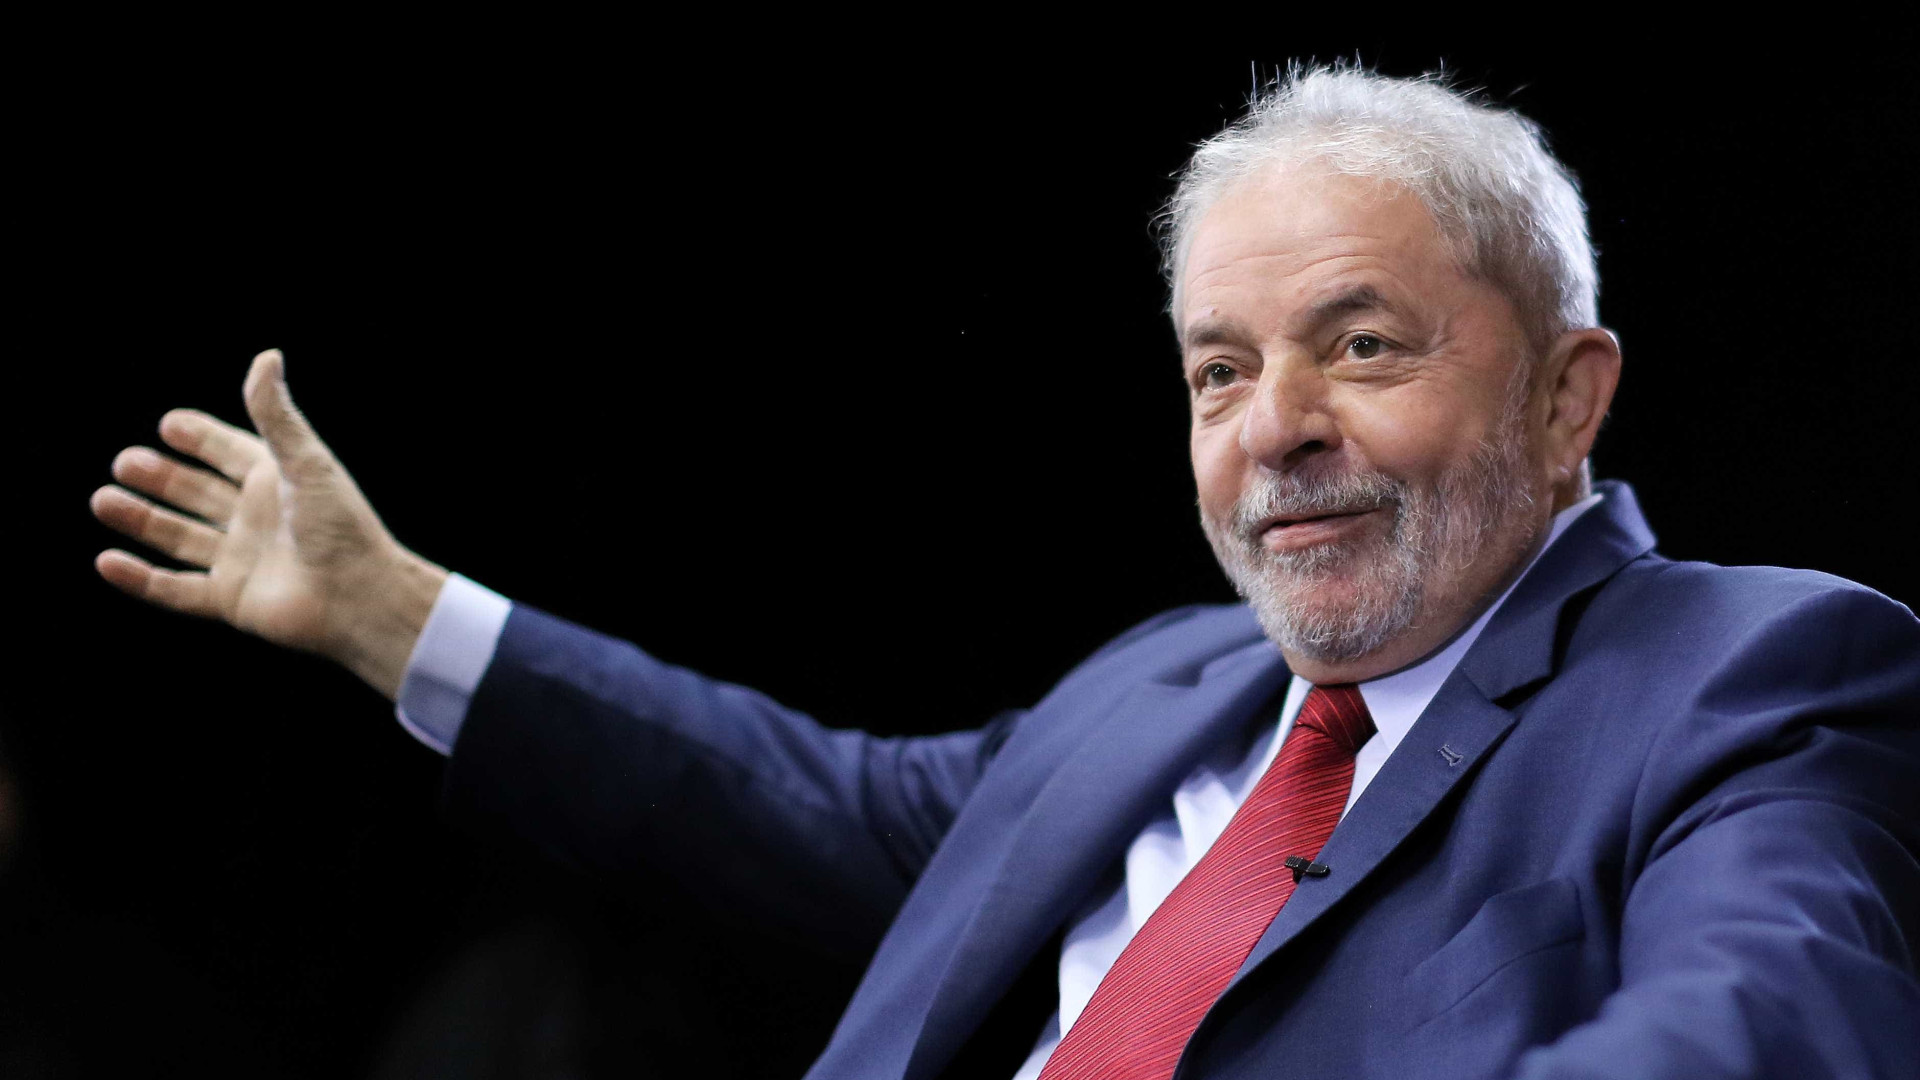 Maioria dos brasileiros quer Temer processado e Lula preso, diz estudo